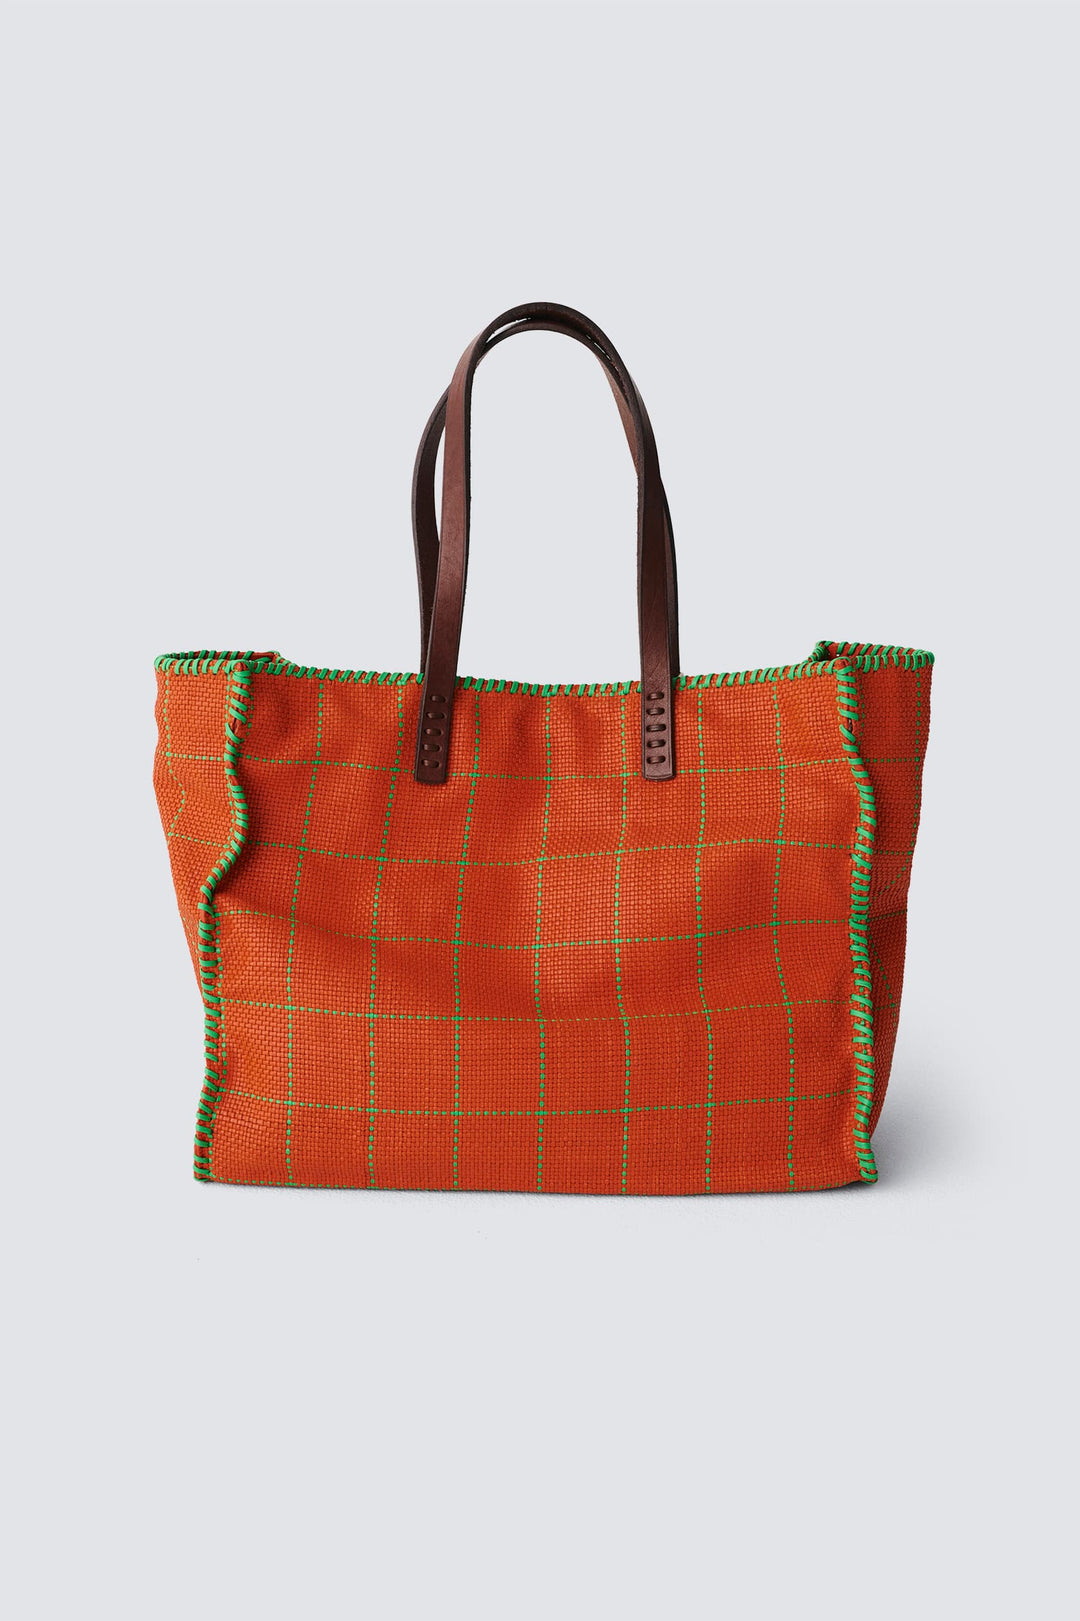 Goyard Handtaschen & Accessoires online kaufen - StockX